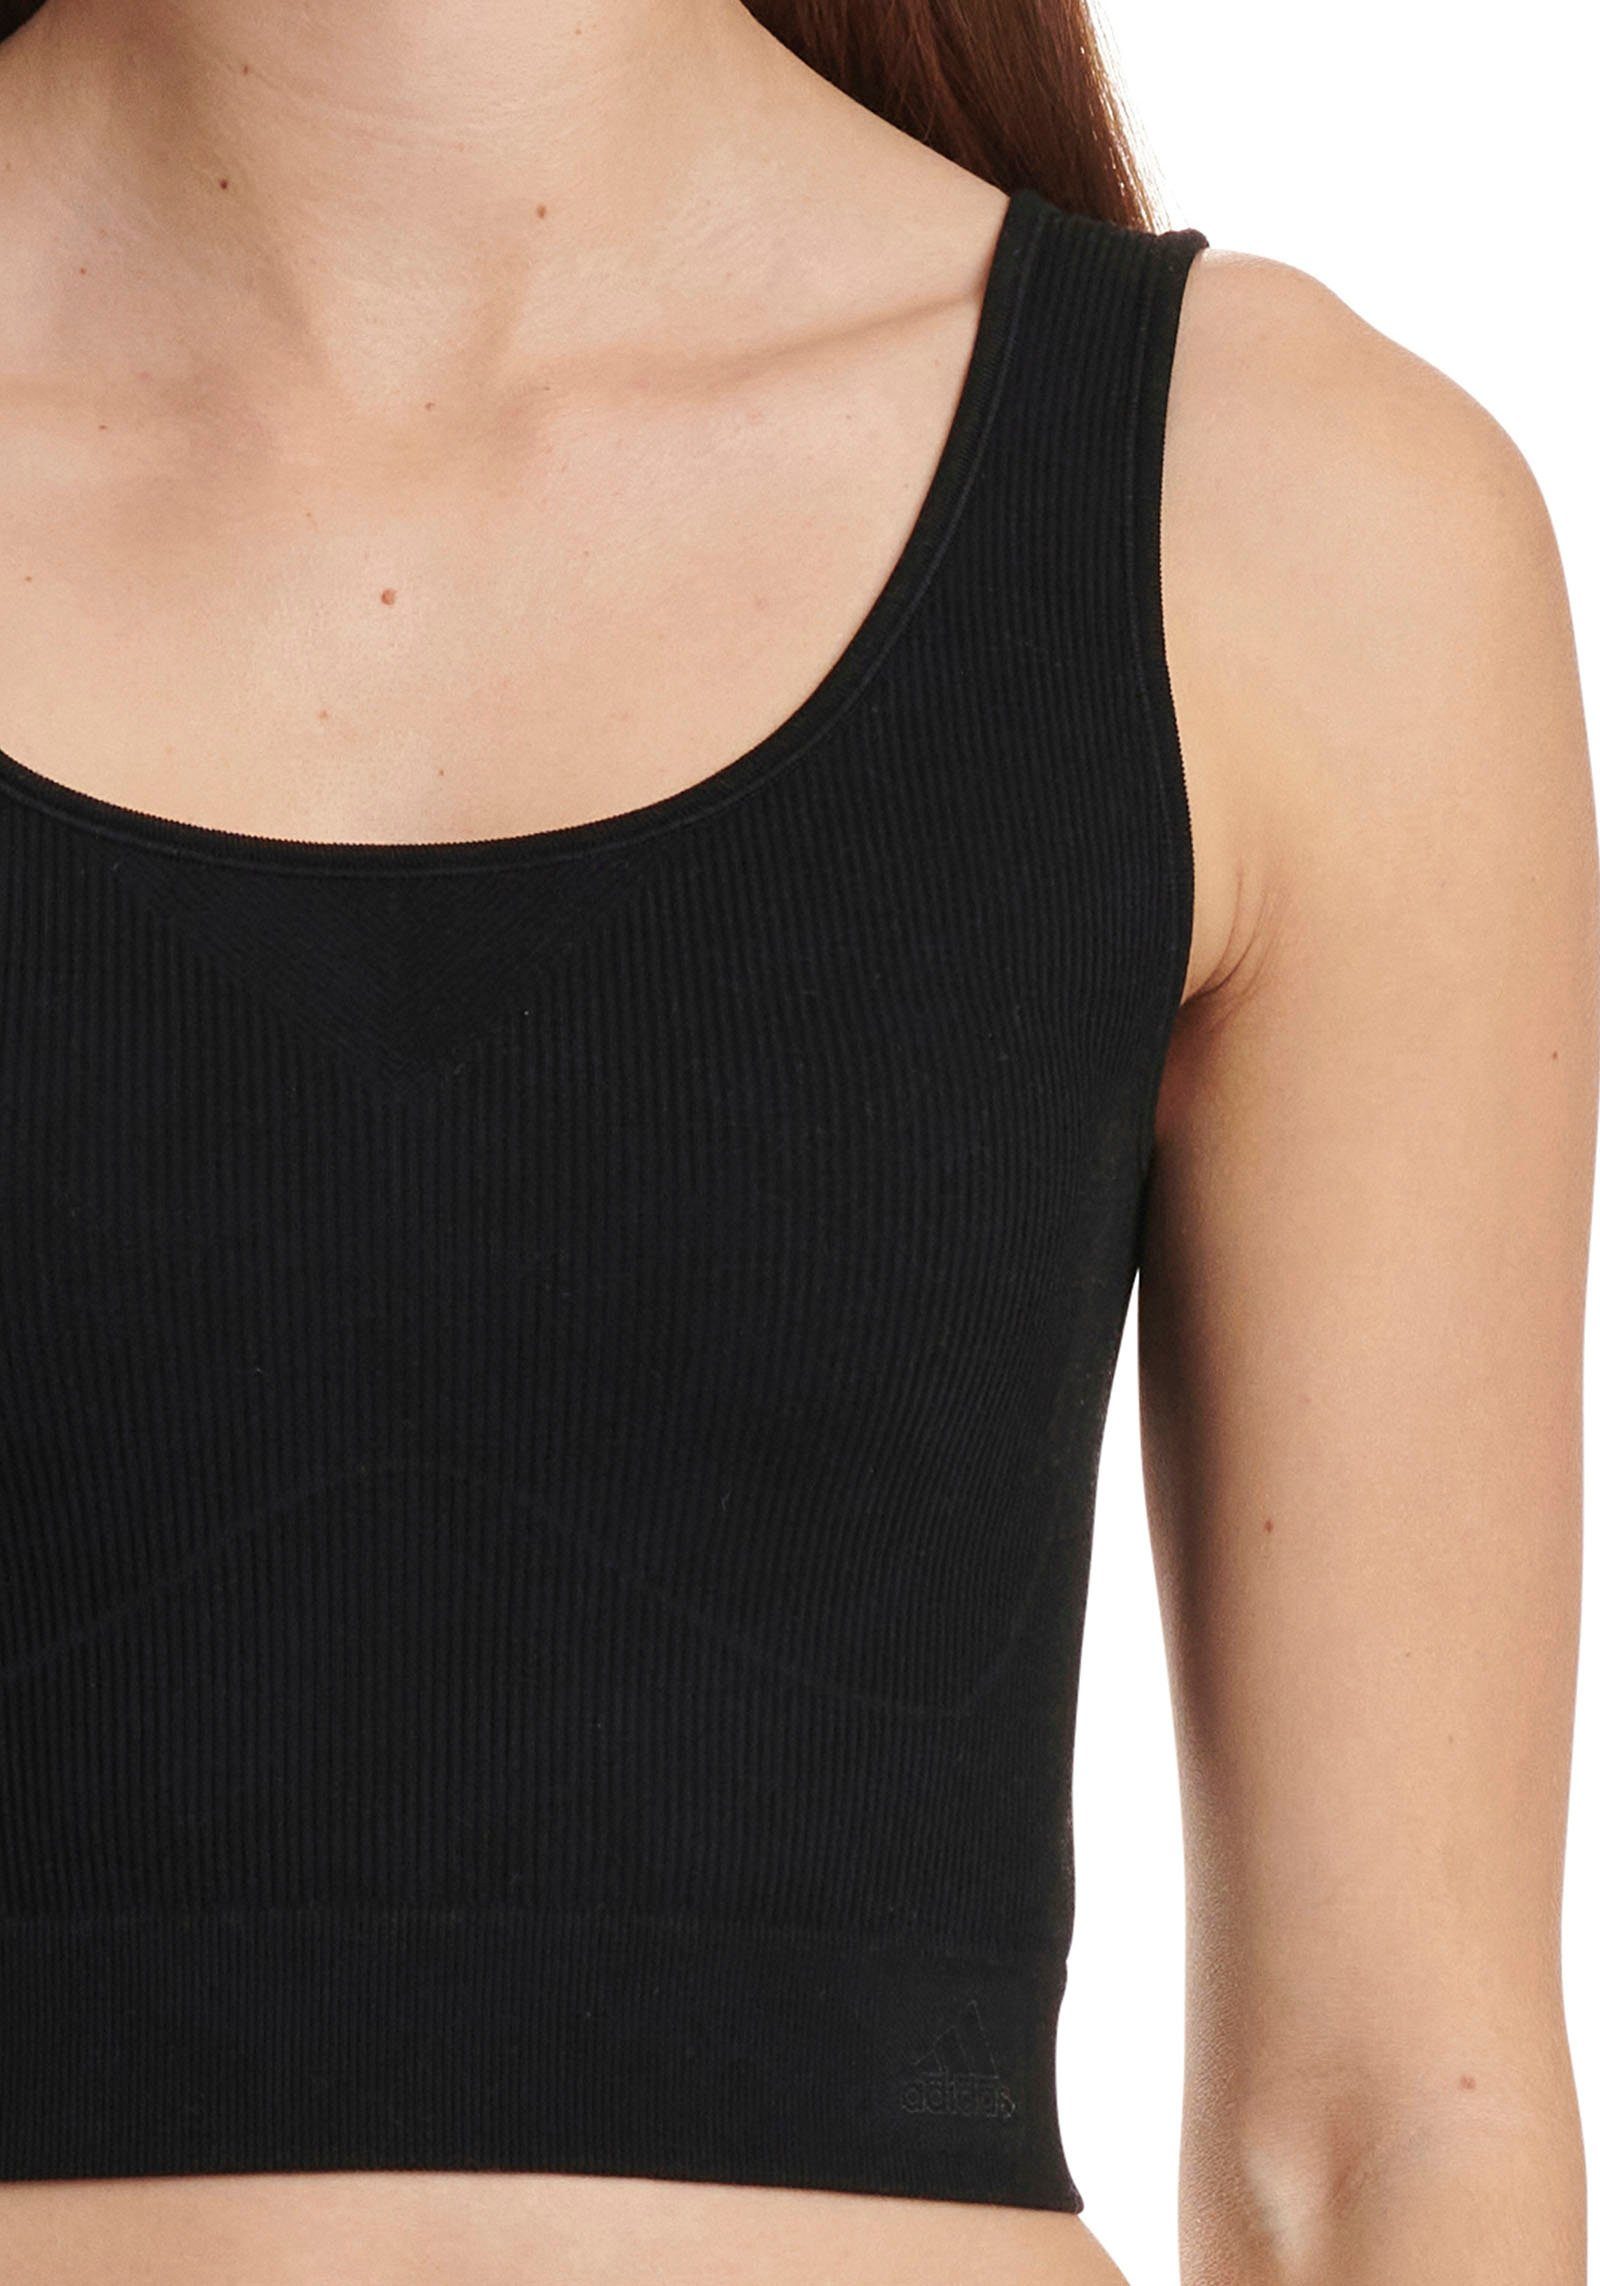 Stretch Nahtloser schwarz adidas Top Cropped Sportswear Unterhemd